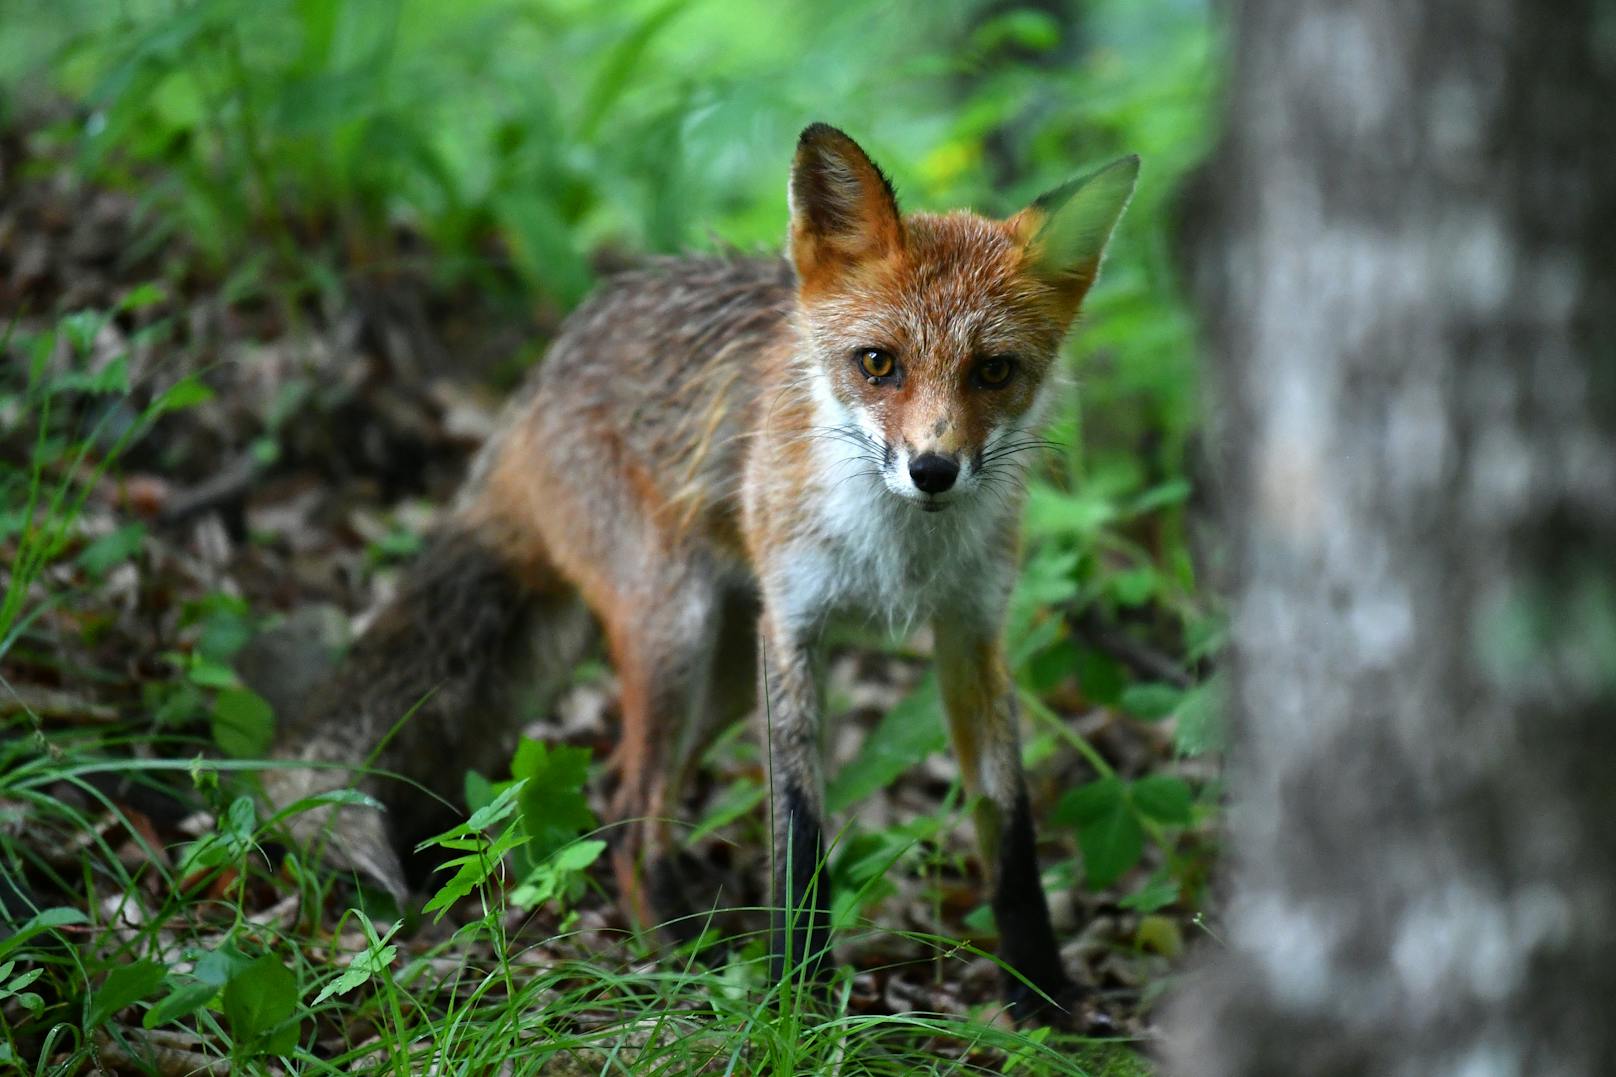 Nach einer Fuchsattacke in Kärnten fragen sich viele: Wie gefährlich sind Füchse wirklich?